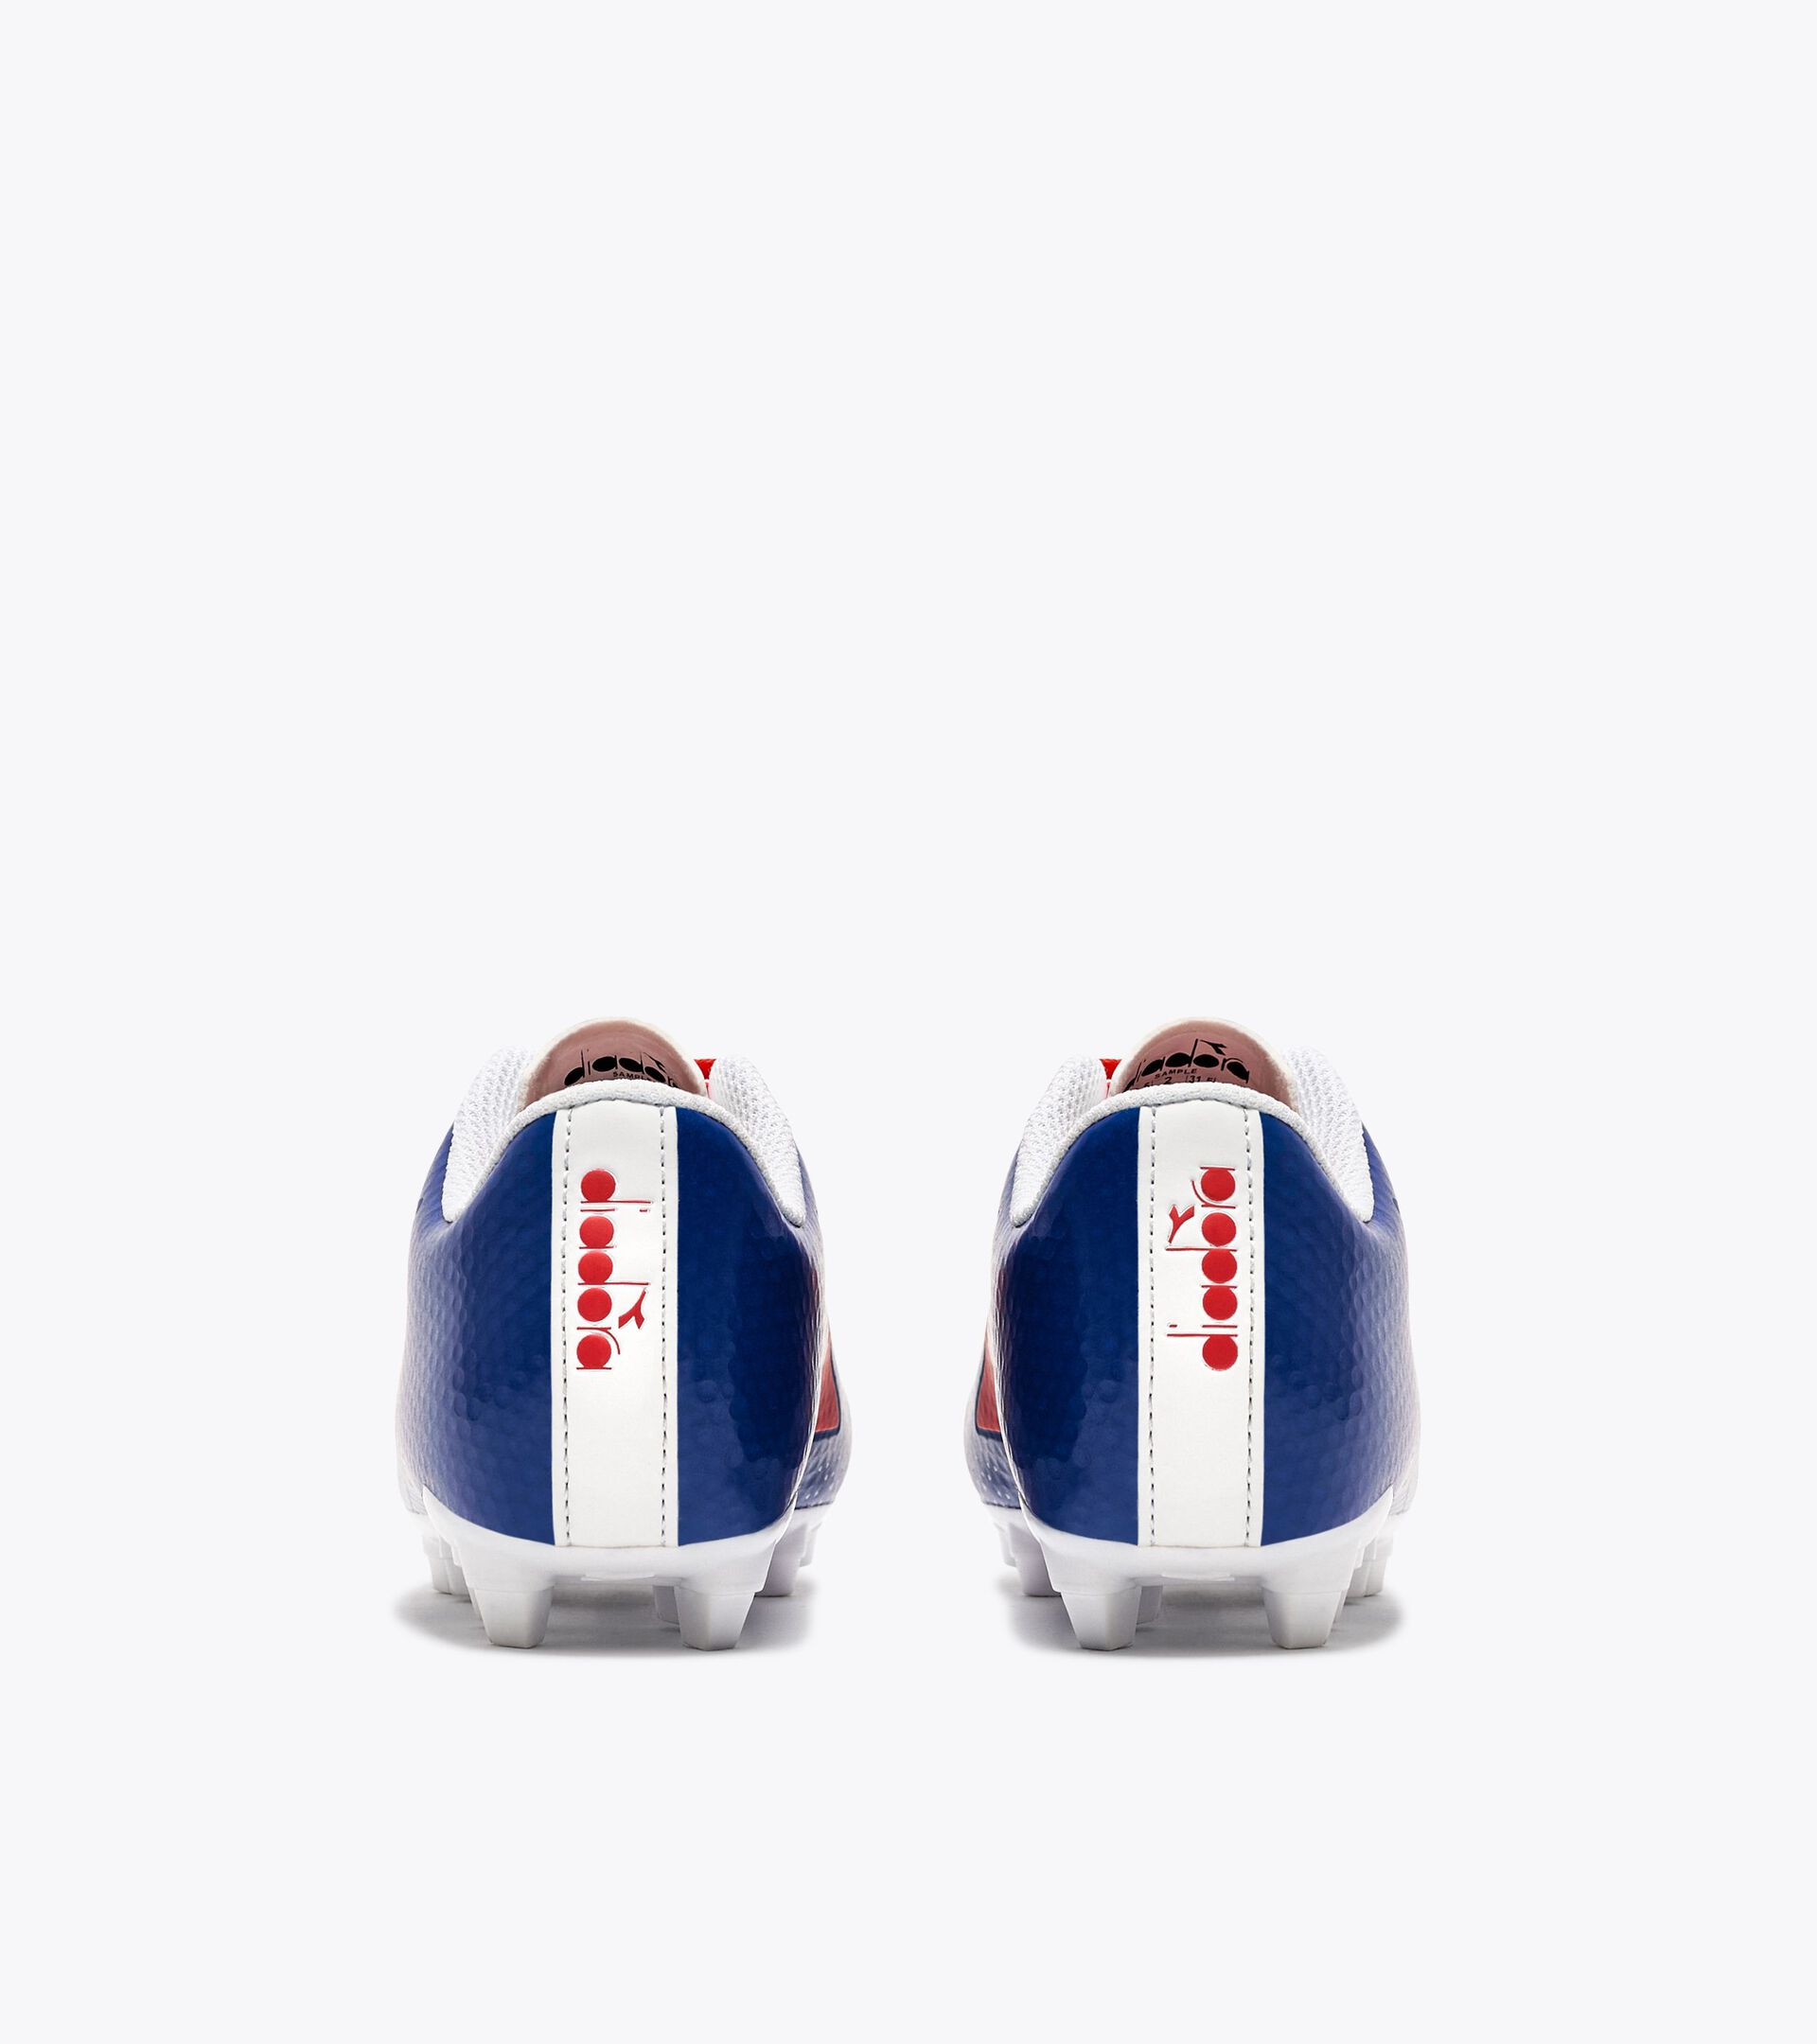 Calcio boots for firm grounds - Junior CATTURA GR LPU JR ROYAL BLUE/RED FLUO/WHITE - Diadora